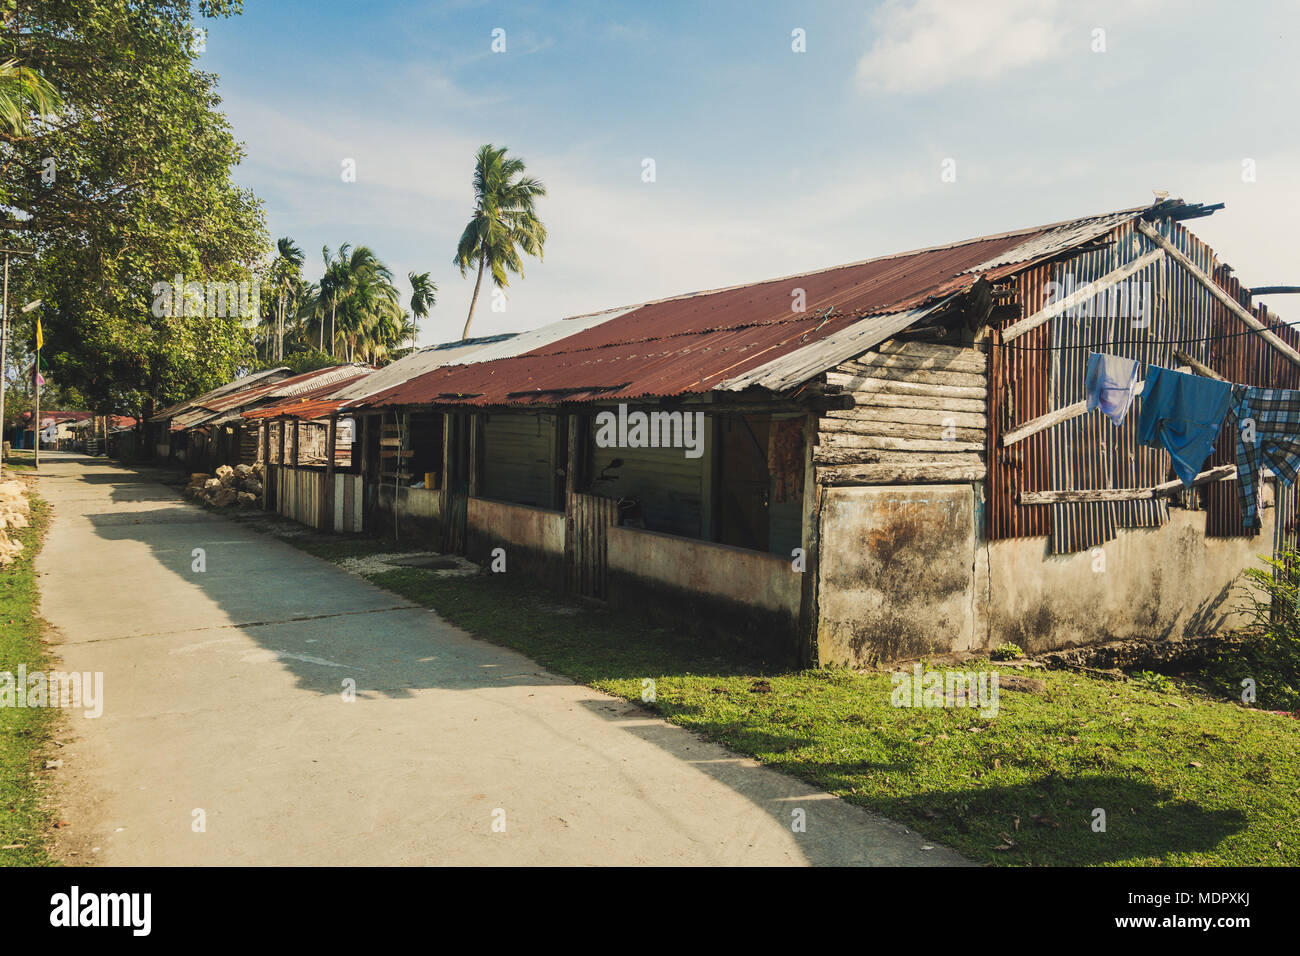 Eine alte Baracke für die Armen. Armut ist das Problem der Menschheit. Fischer Hütte im tropischen Dorf in der Nähe von dem Meer in Indien Stockfoto